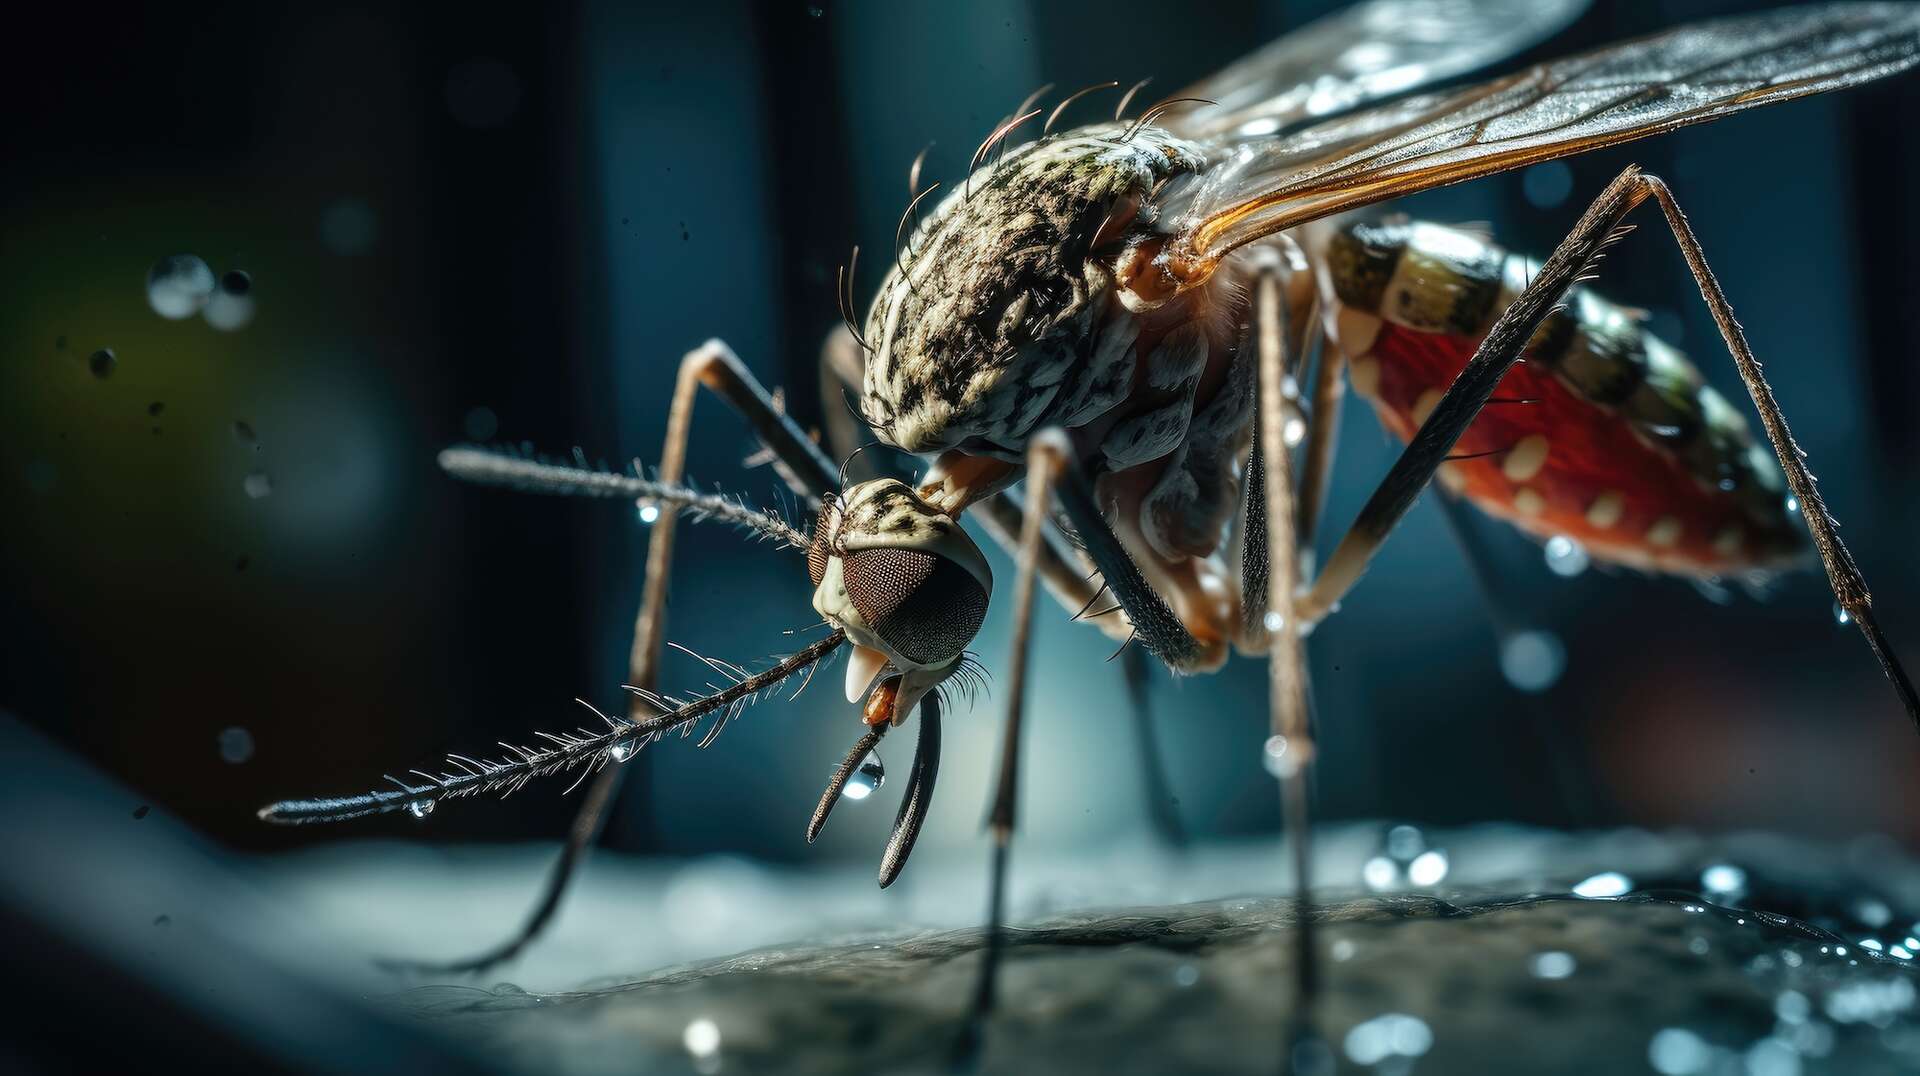 Un patch anti-moustiques bientôt à l'essai en Ouganda - Afrique  Sub-Saharienne